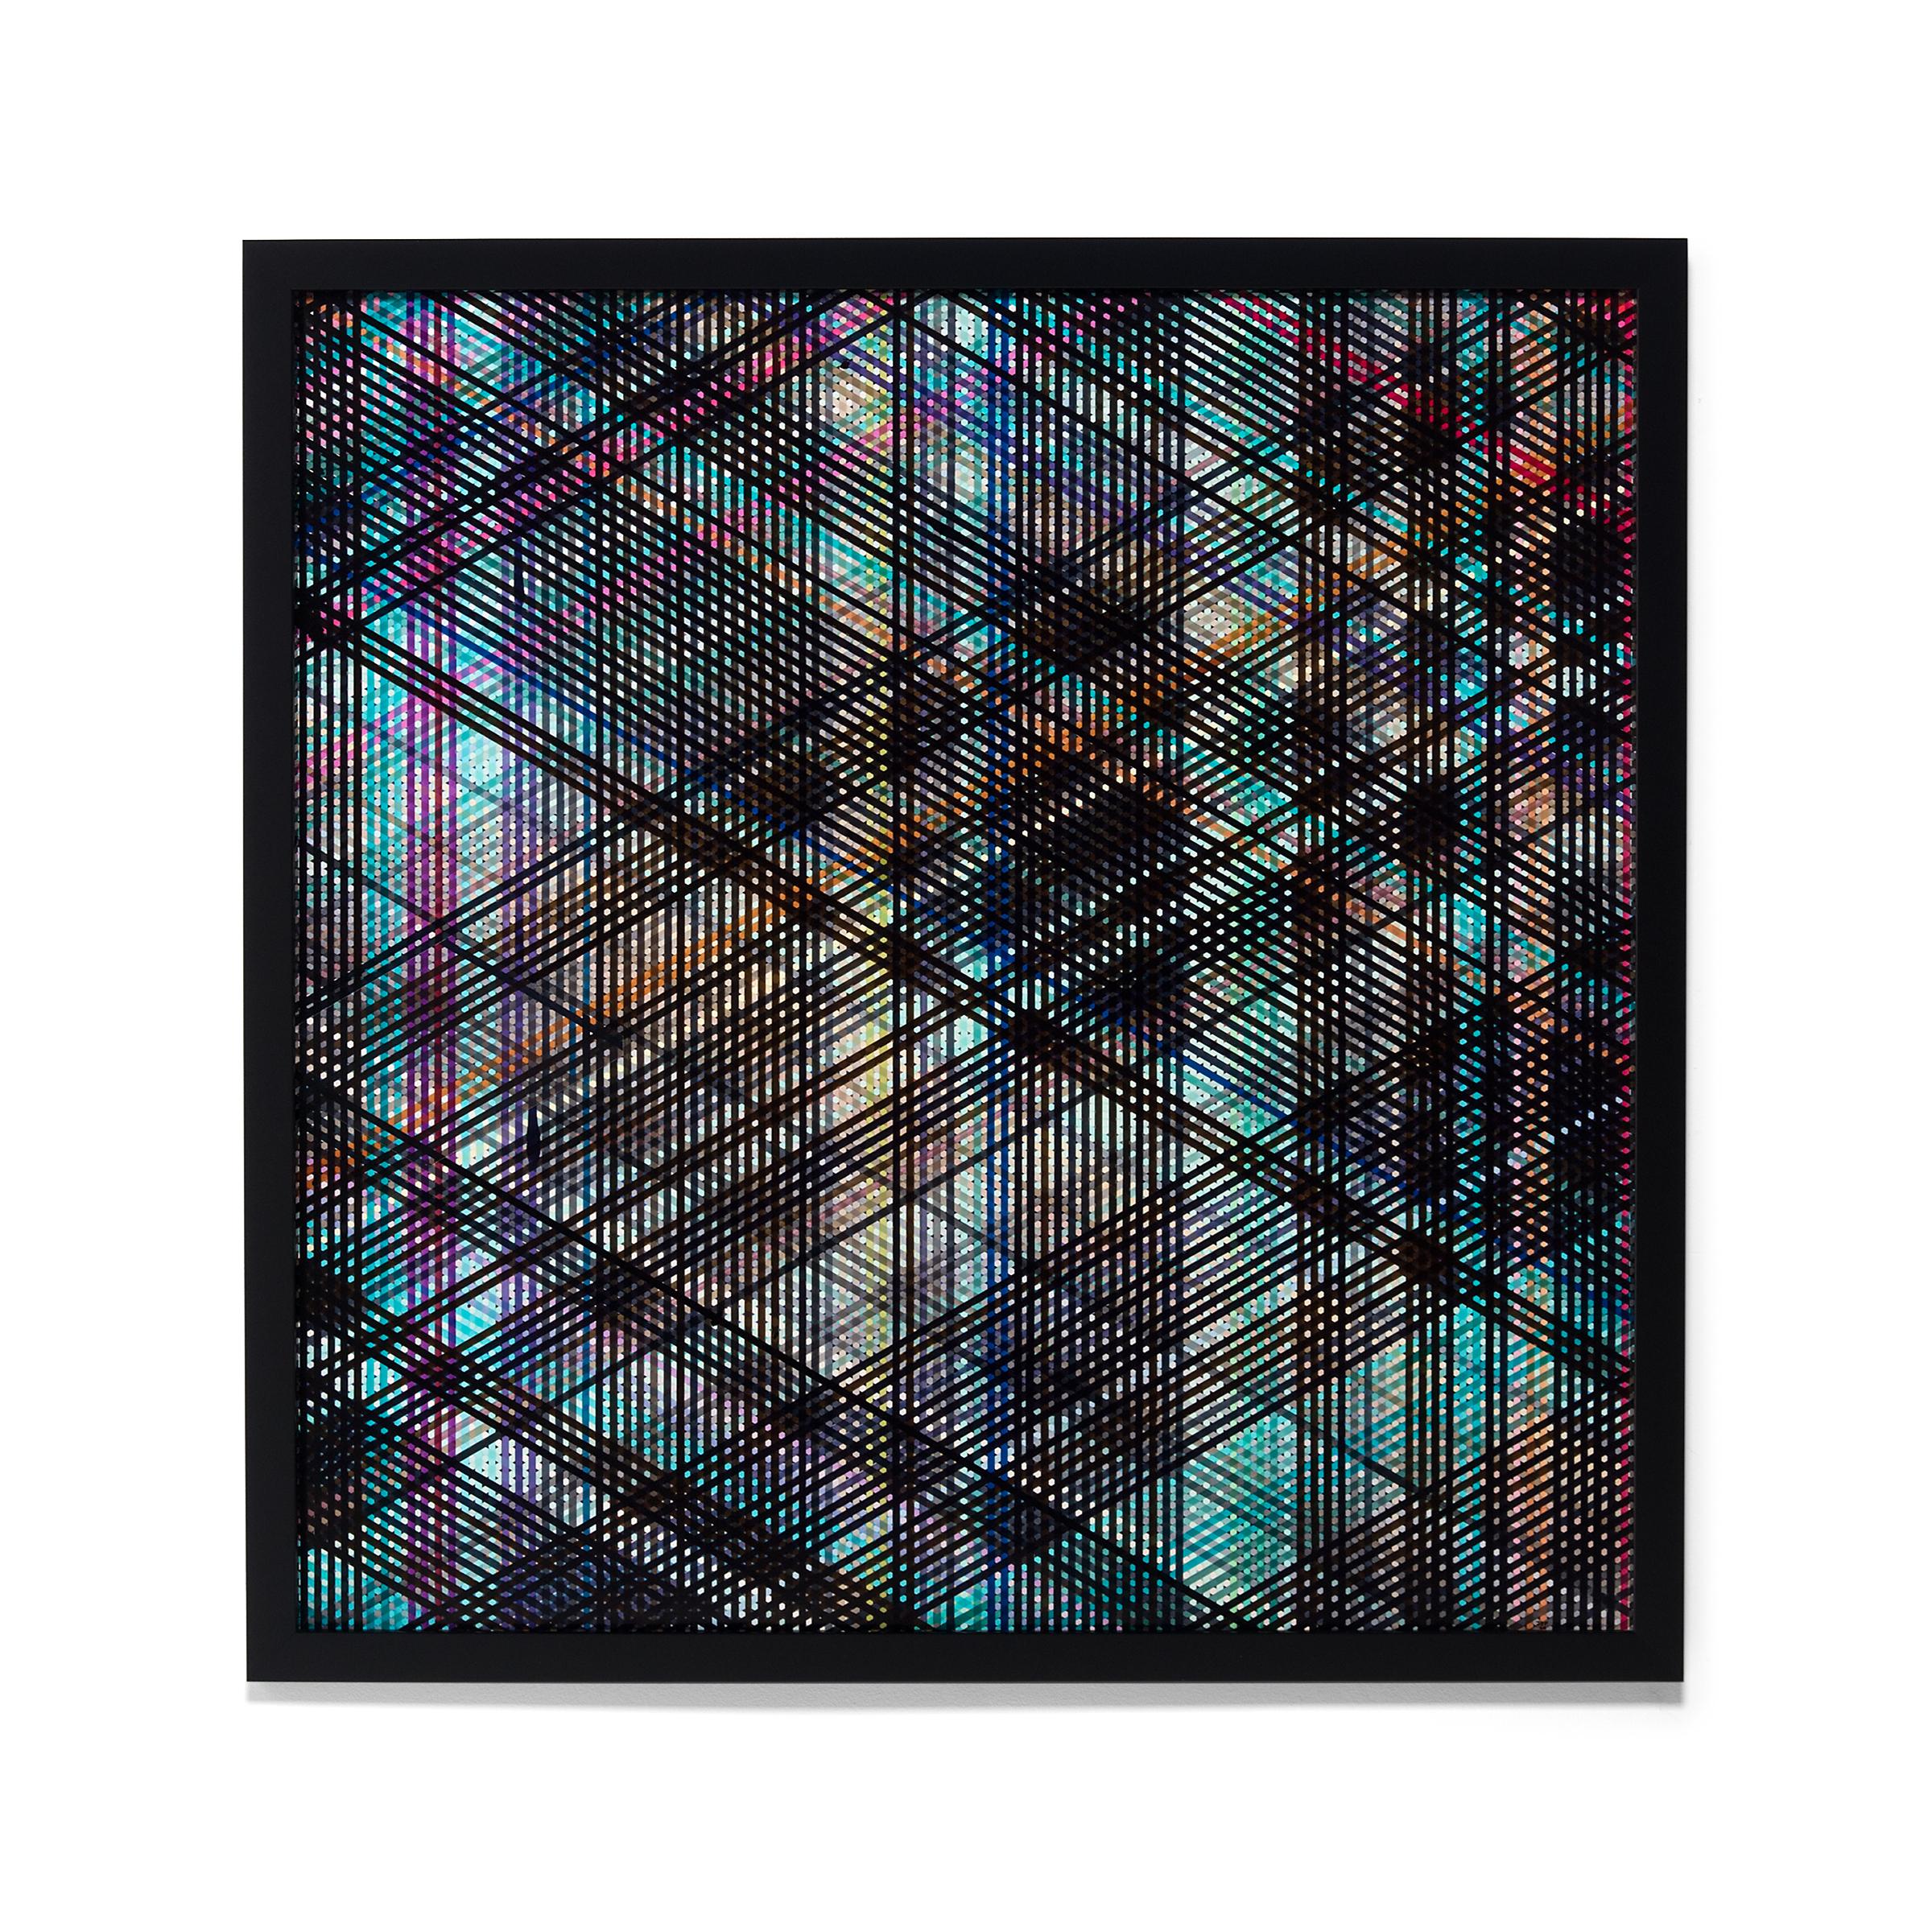 Pigmenttinte „E0102-72.3“ auf Fotopapier, 2020 – Art von Jan Pieter Fokkens